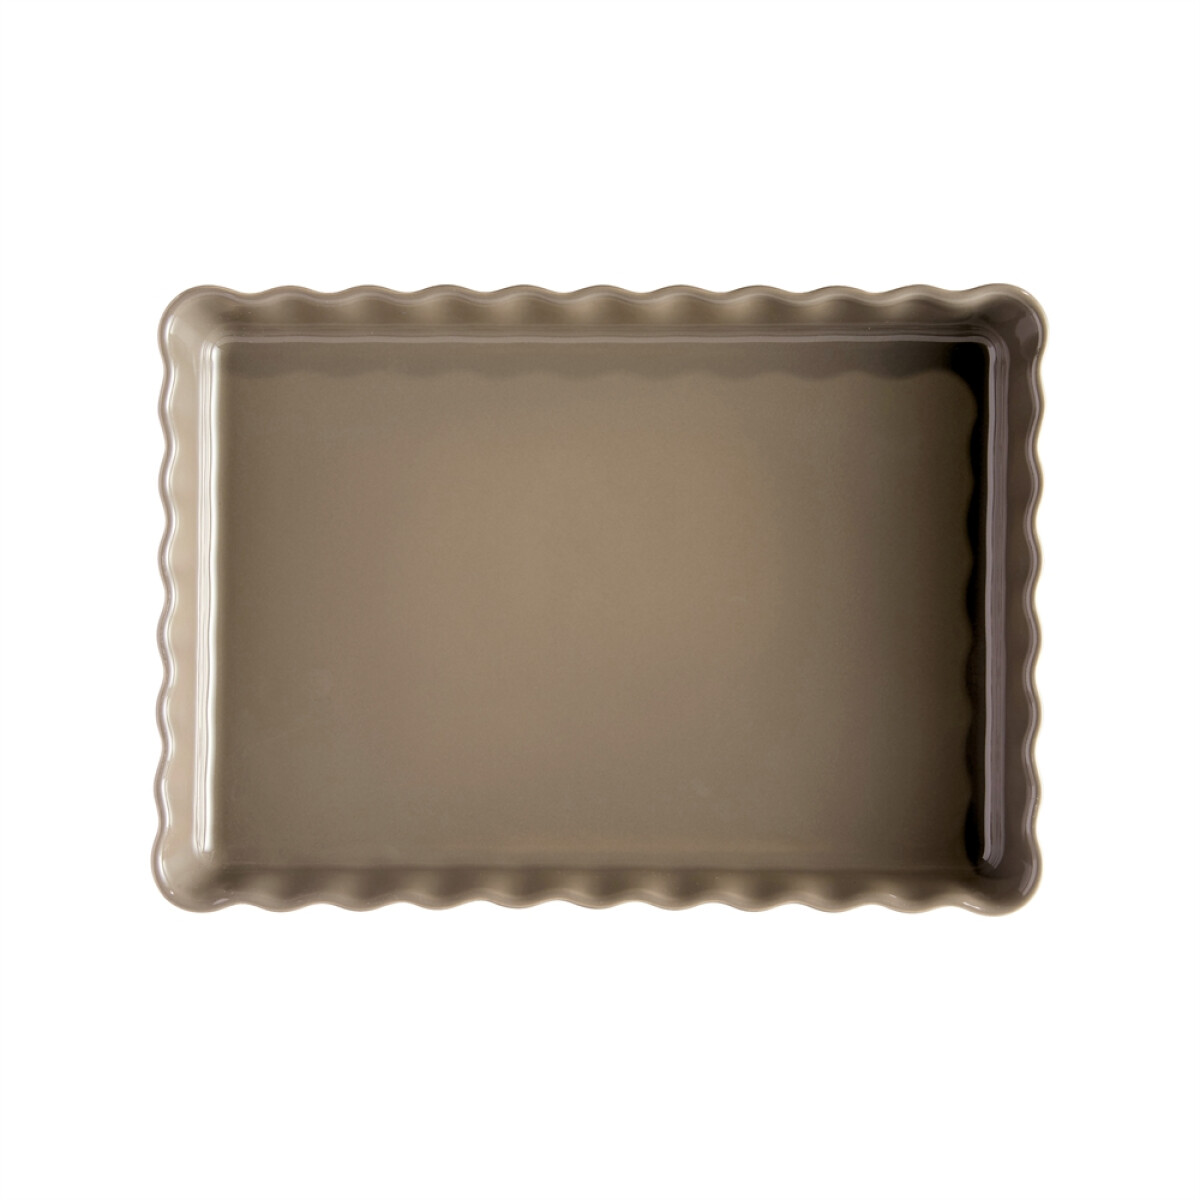 Керамична форма за тарт EMILE HENRY DEEP RECTANGULAR TART DISH - цвят сиво-бежов